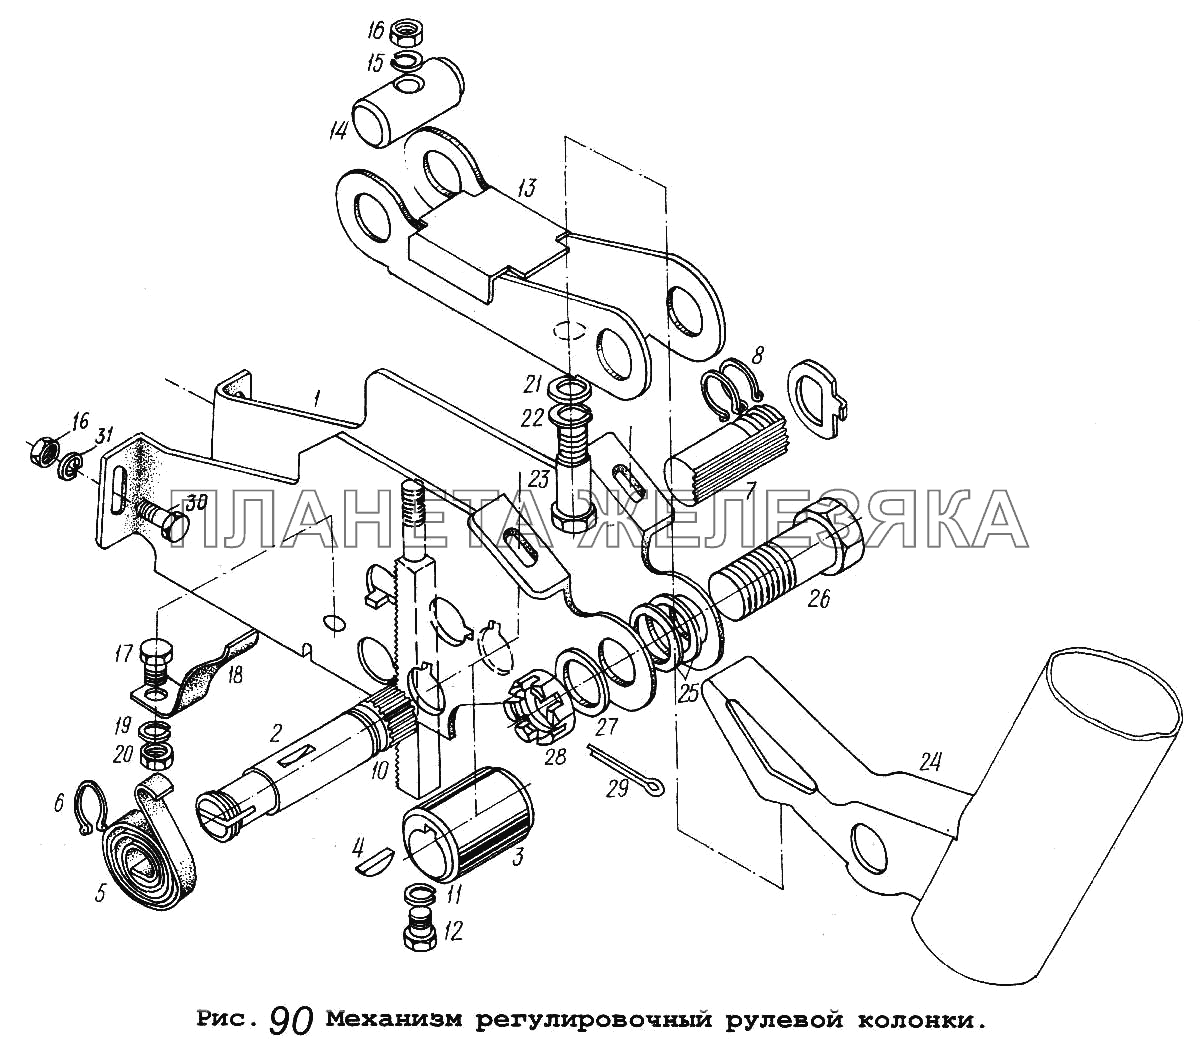 Механизм регулировочный рулевой колонки МАЗ-5551